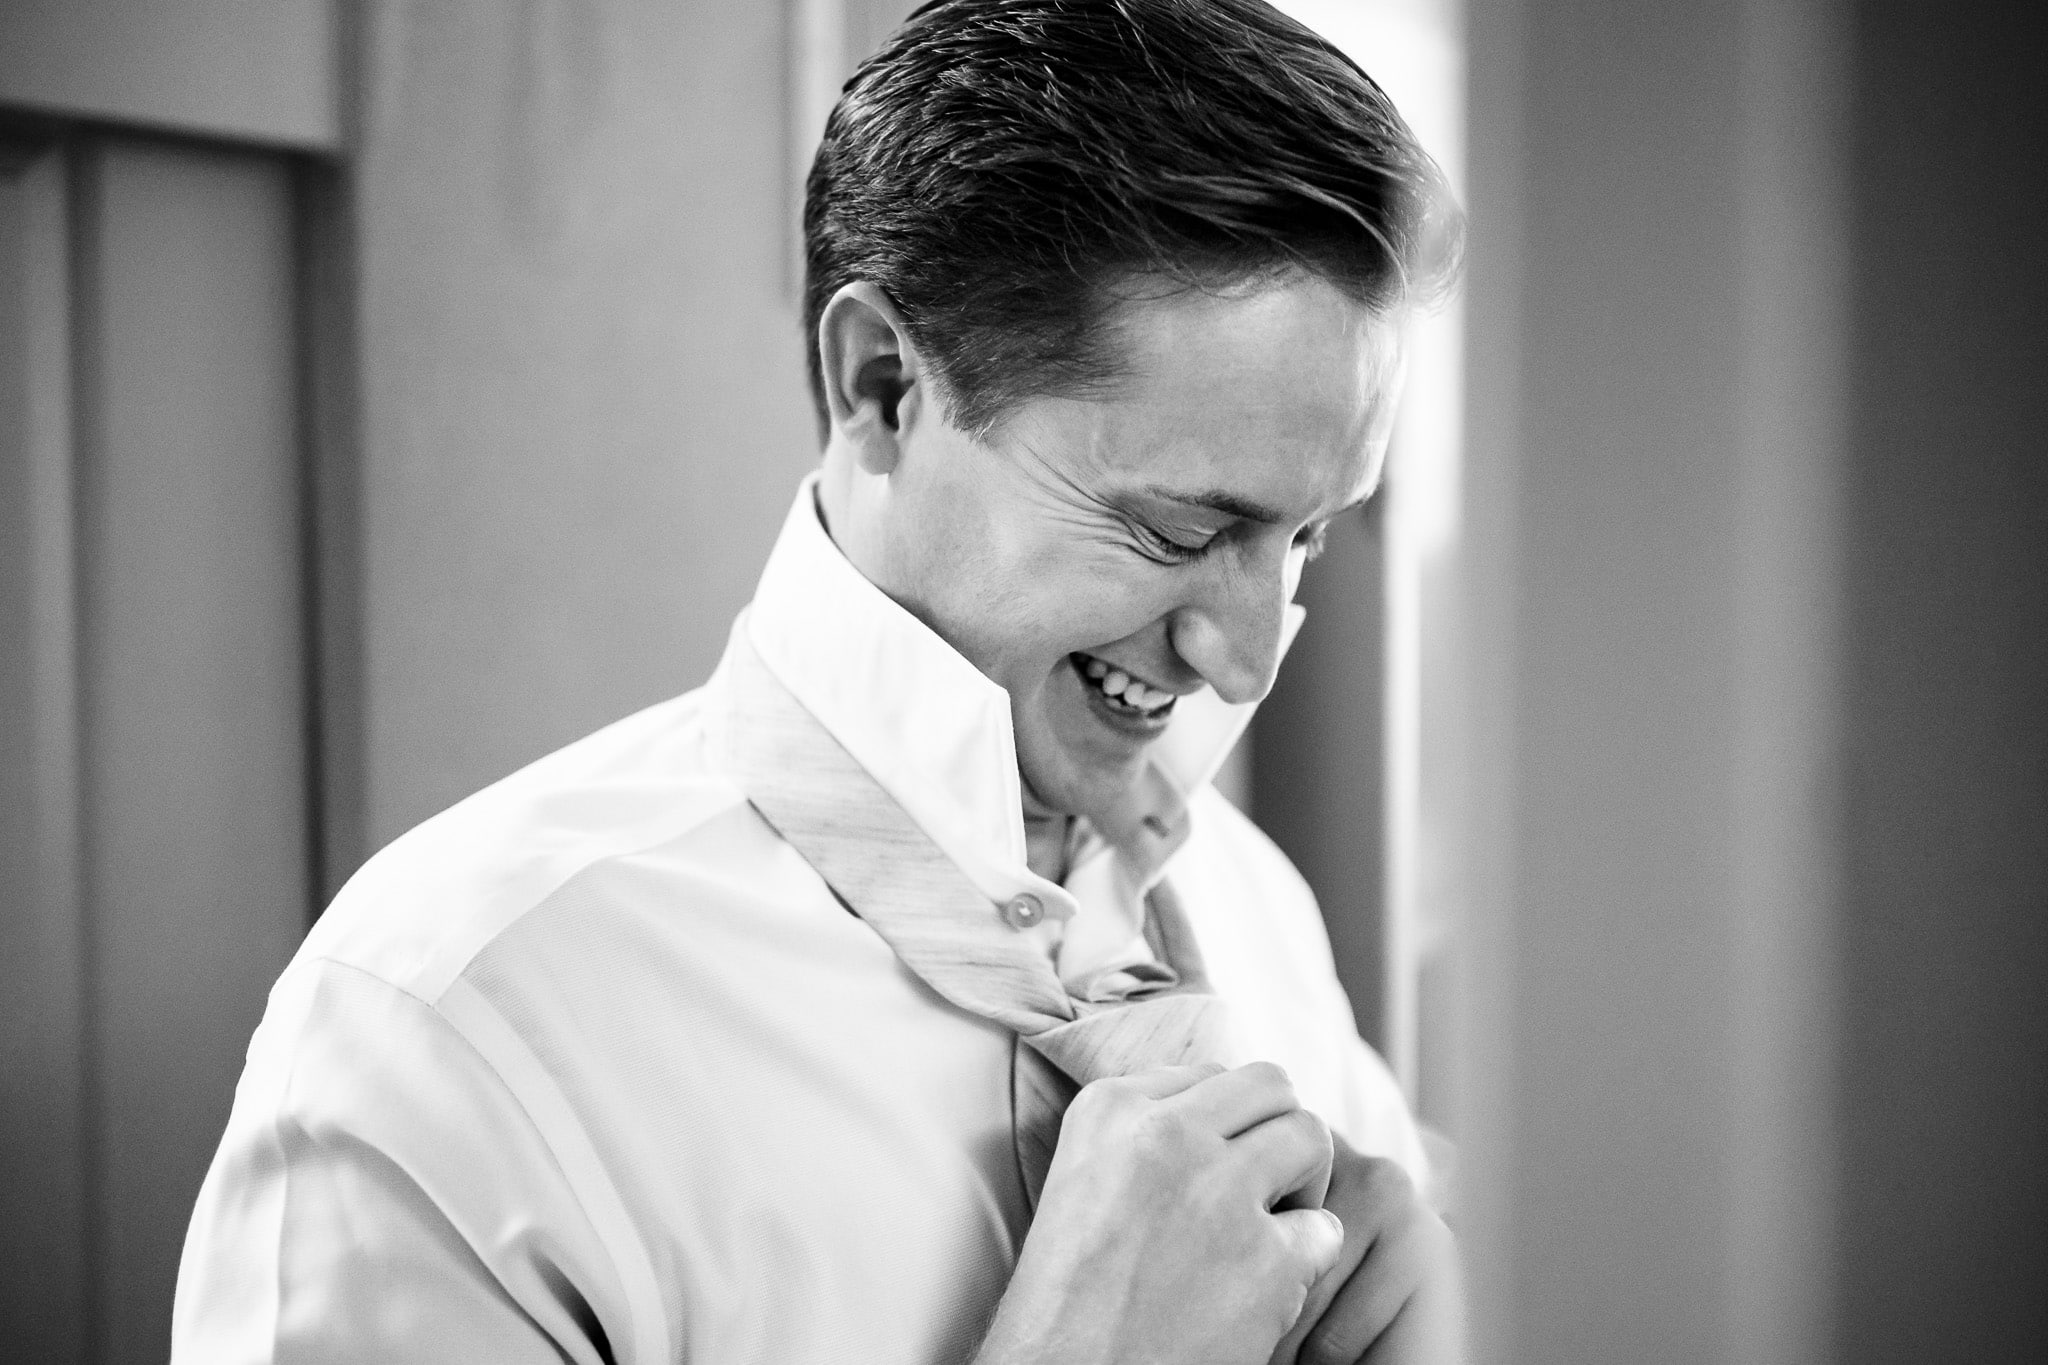 groom laughs as he ties his tie | photo by Kivus & Camera